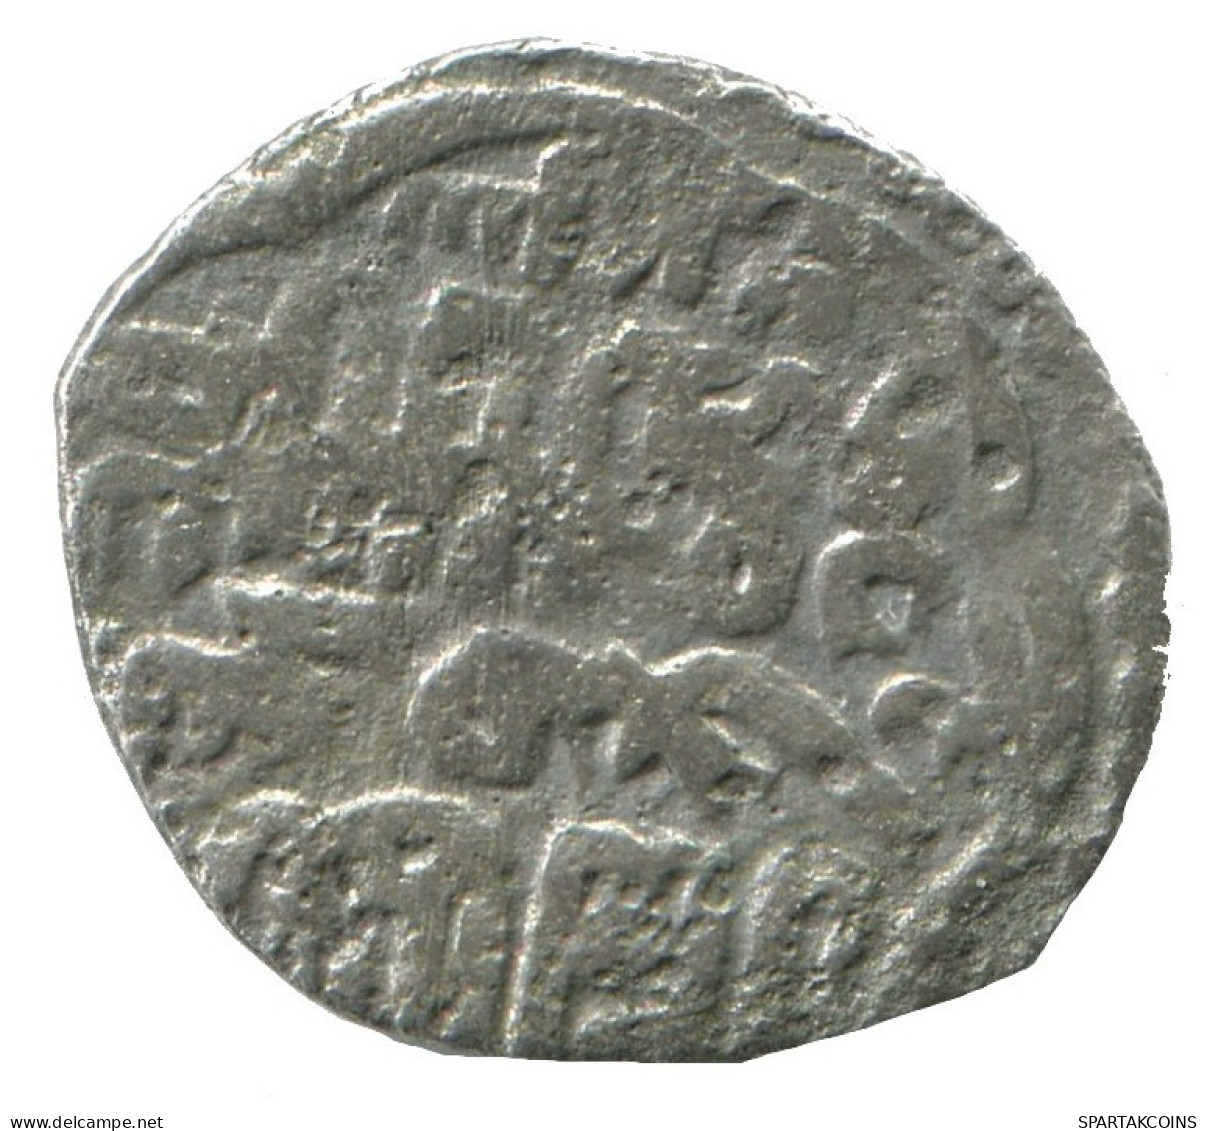 GOLDEN HORDE Silver Dirham Medieval Islamic Coin 1.1g/16mm #NNN2026.8.F.A - Islamiques